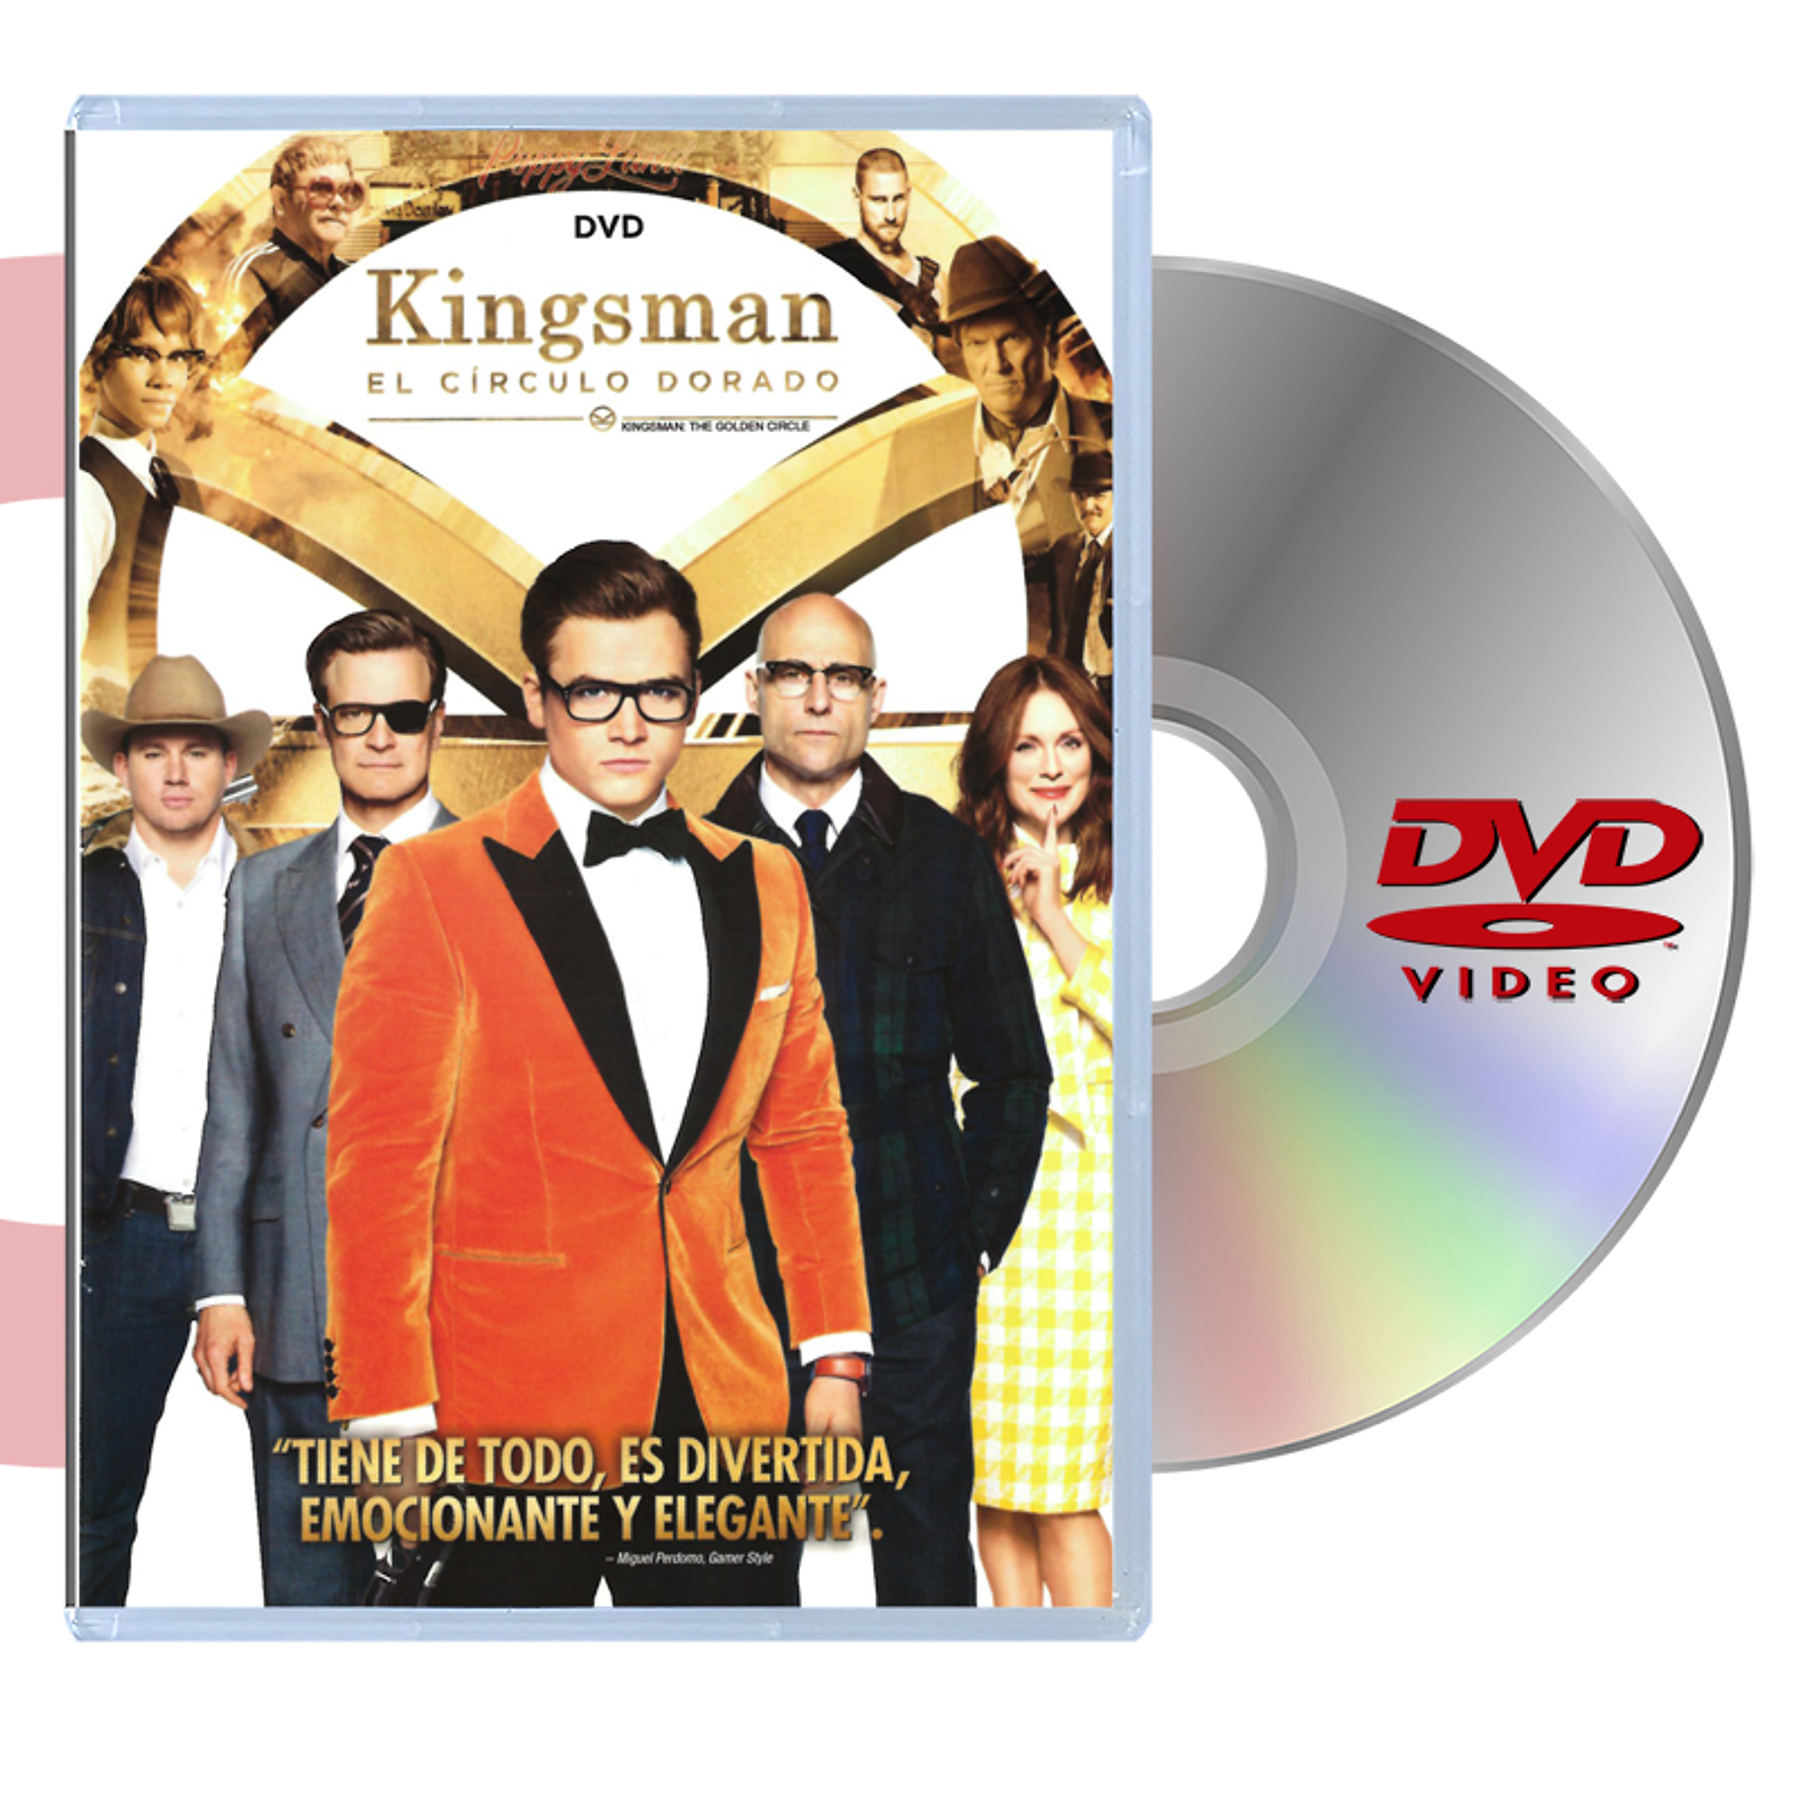 DVD KINGSMAN EL CIRCULO DORADO